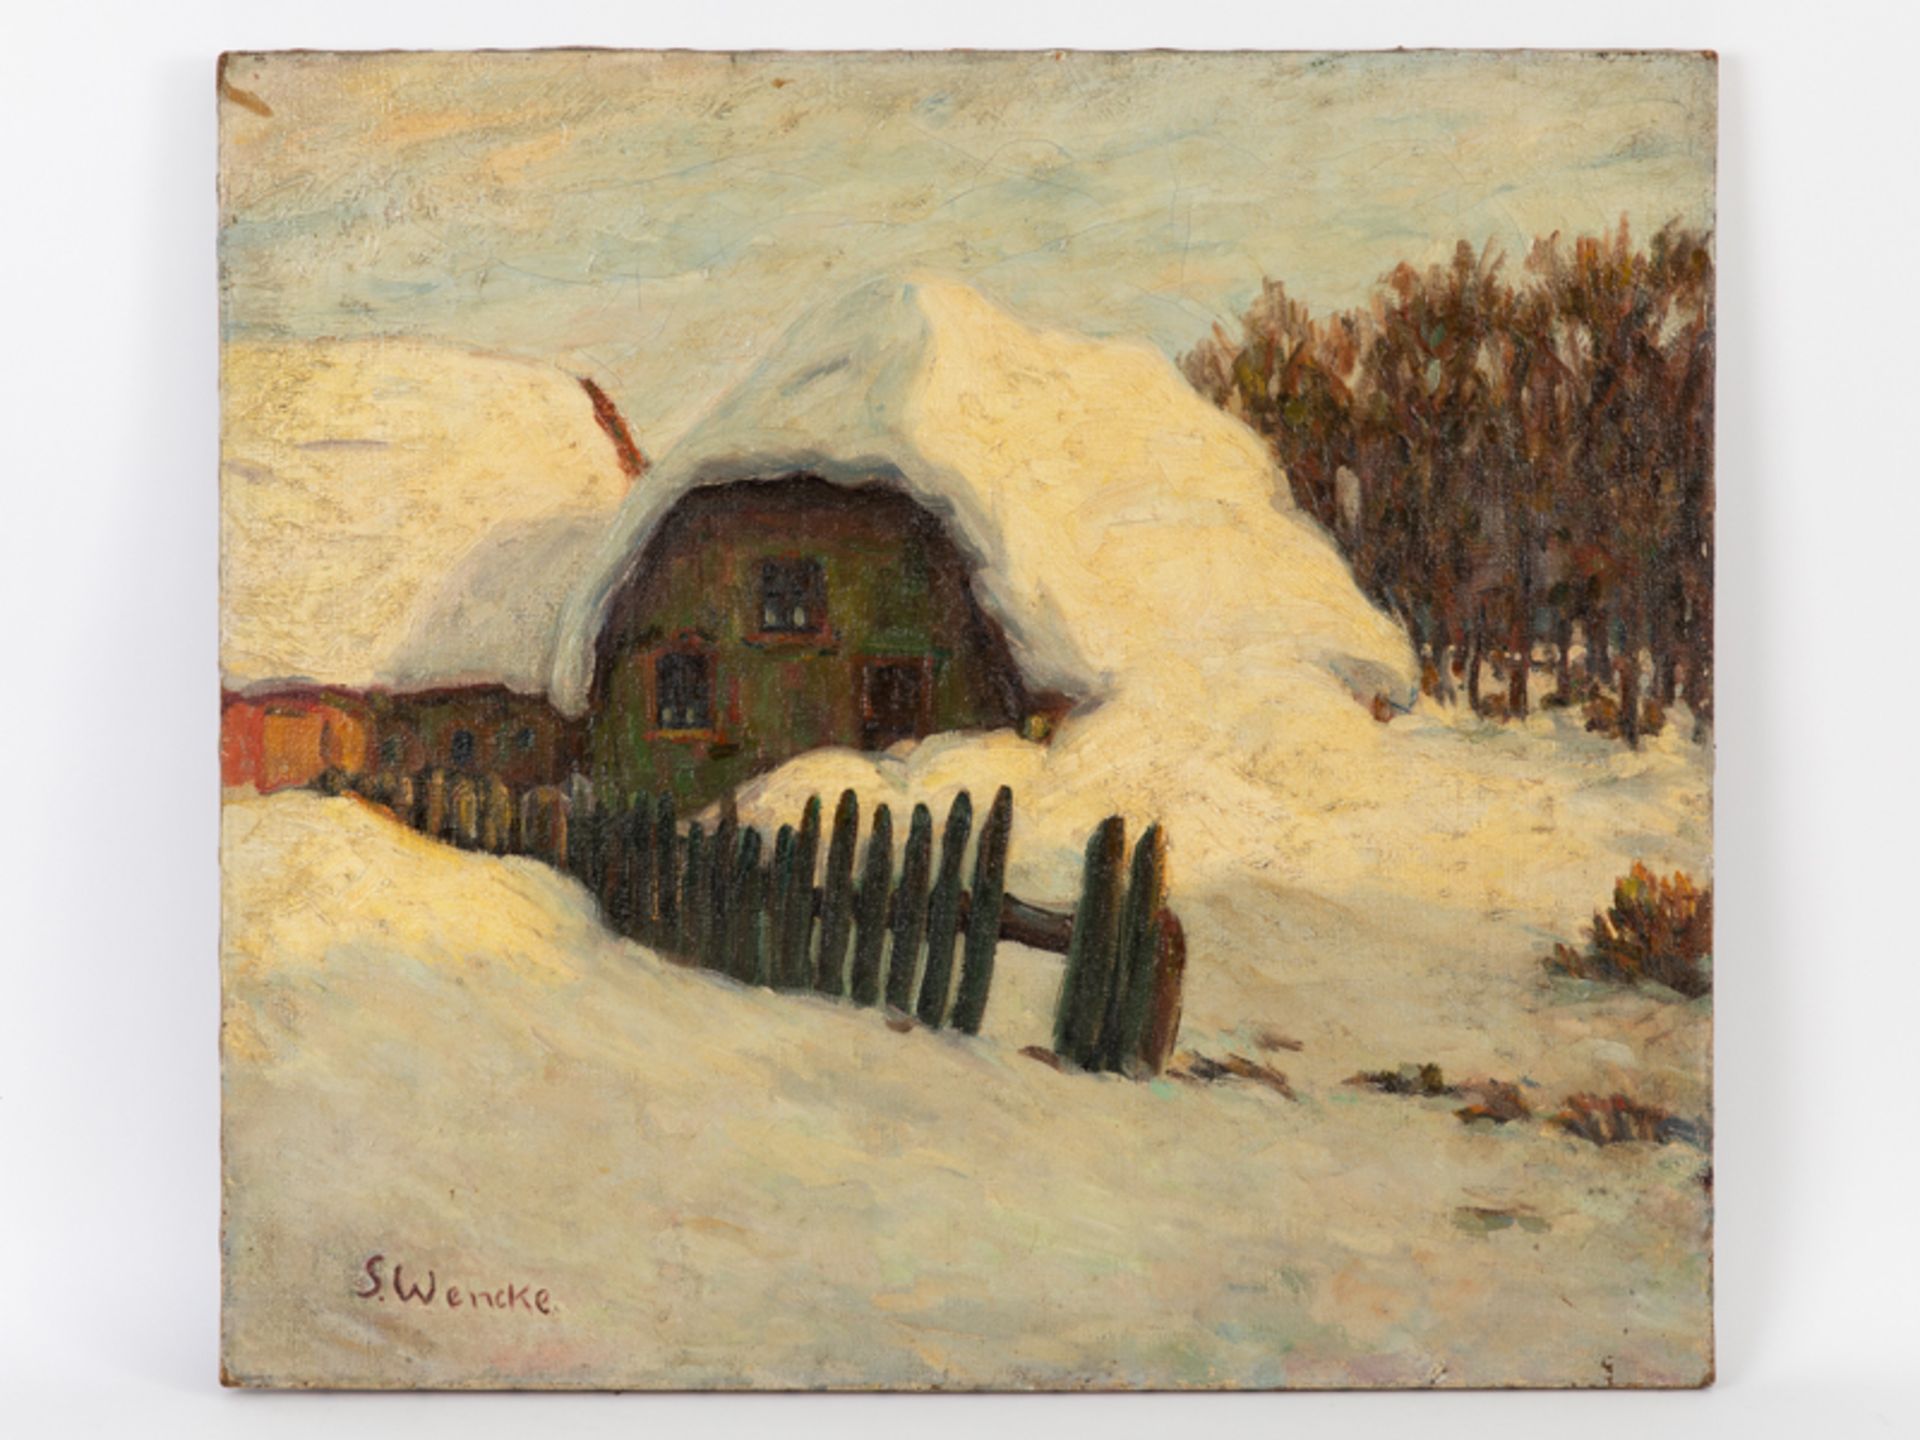 Wencke, Sophie (1898 - 1963) Öl auf Leinwand; Landschaftsmalerei einer Winterlandschaft: Darstellung